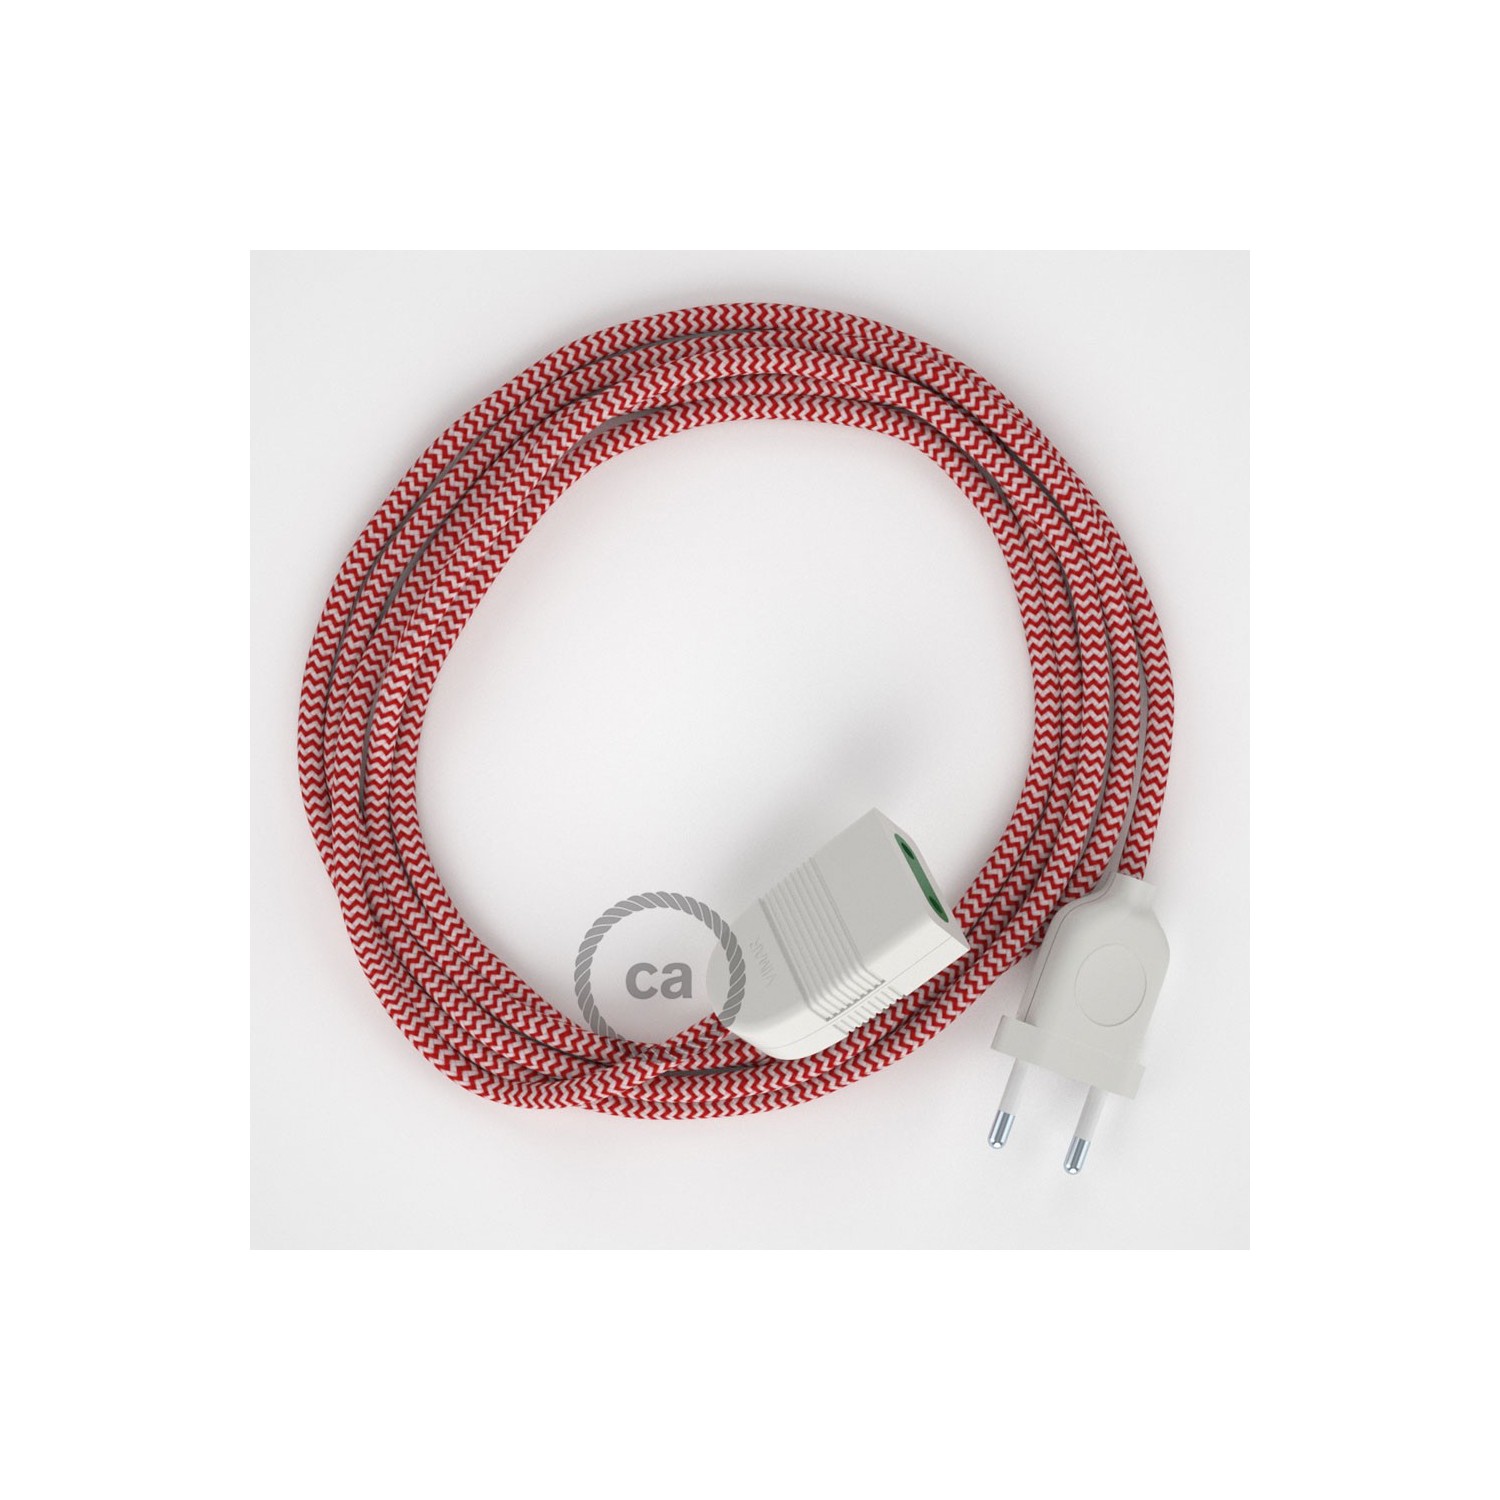 Podaljševalni kabel za napajanje (2P 10A) zigzag rdeč rejon RZ09 - Made in Italy